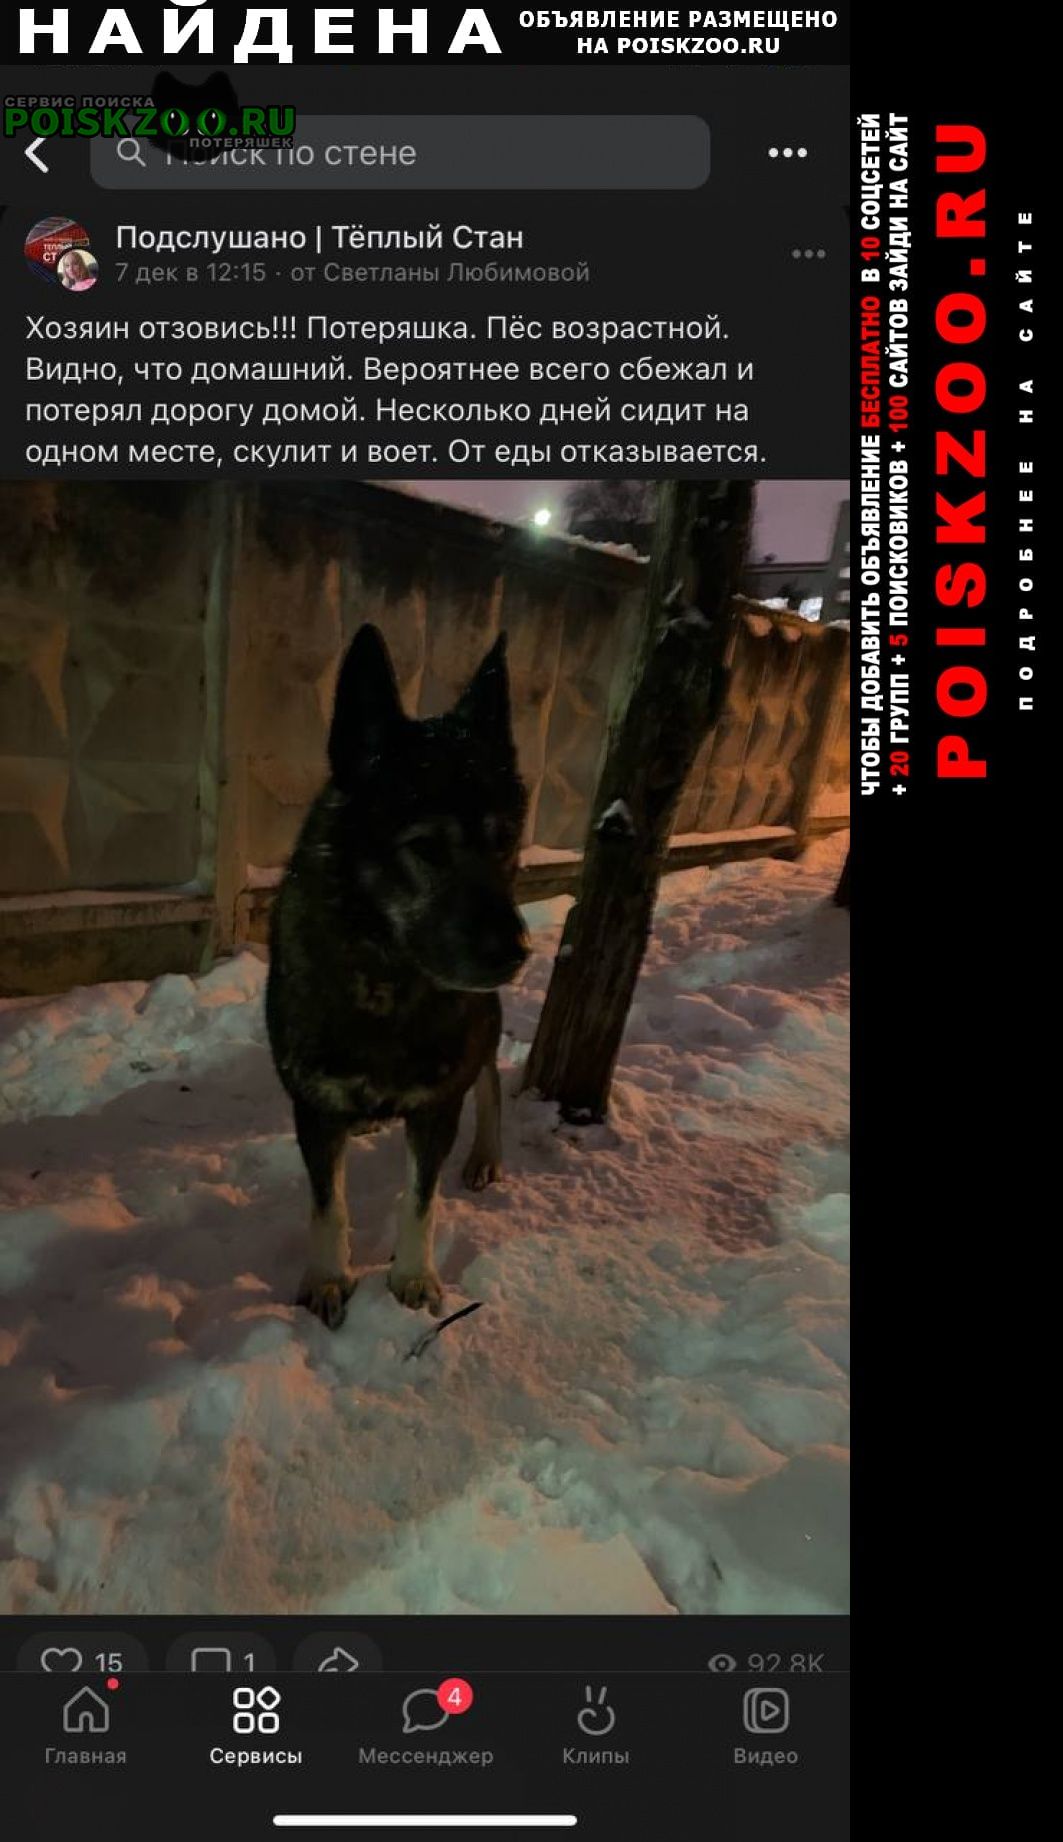 Найдена собака не дается в руки. зимует на улице Москва